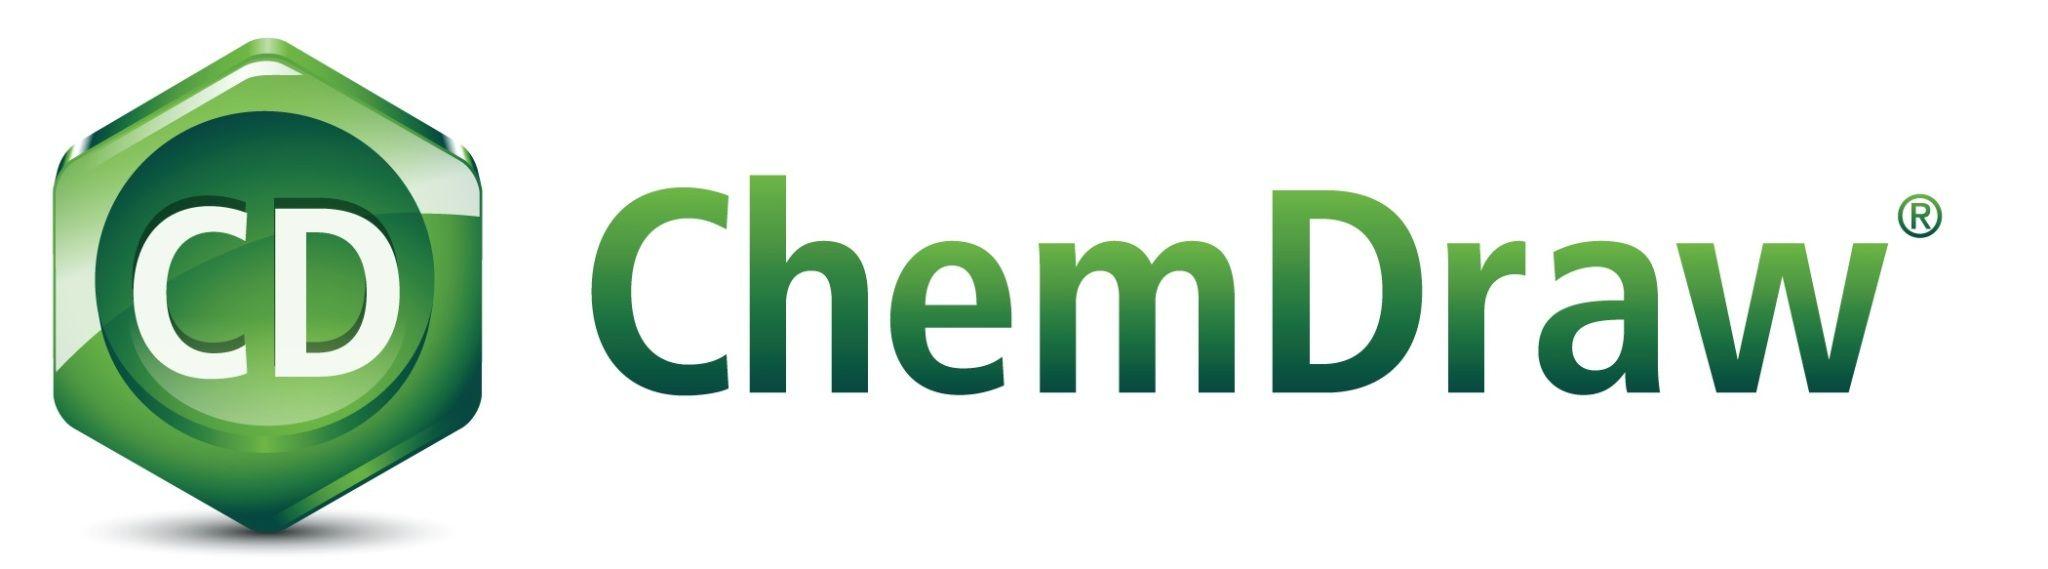 ChemDraw Logo - Chem Draw Professional